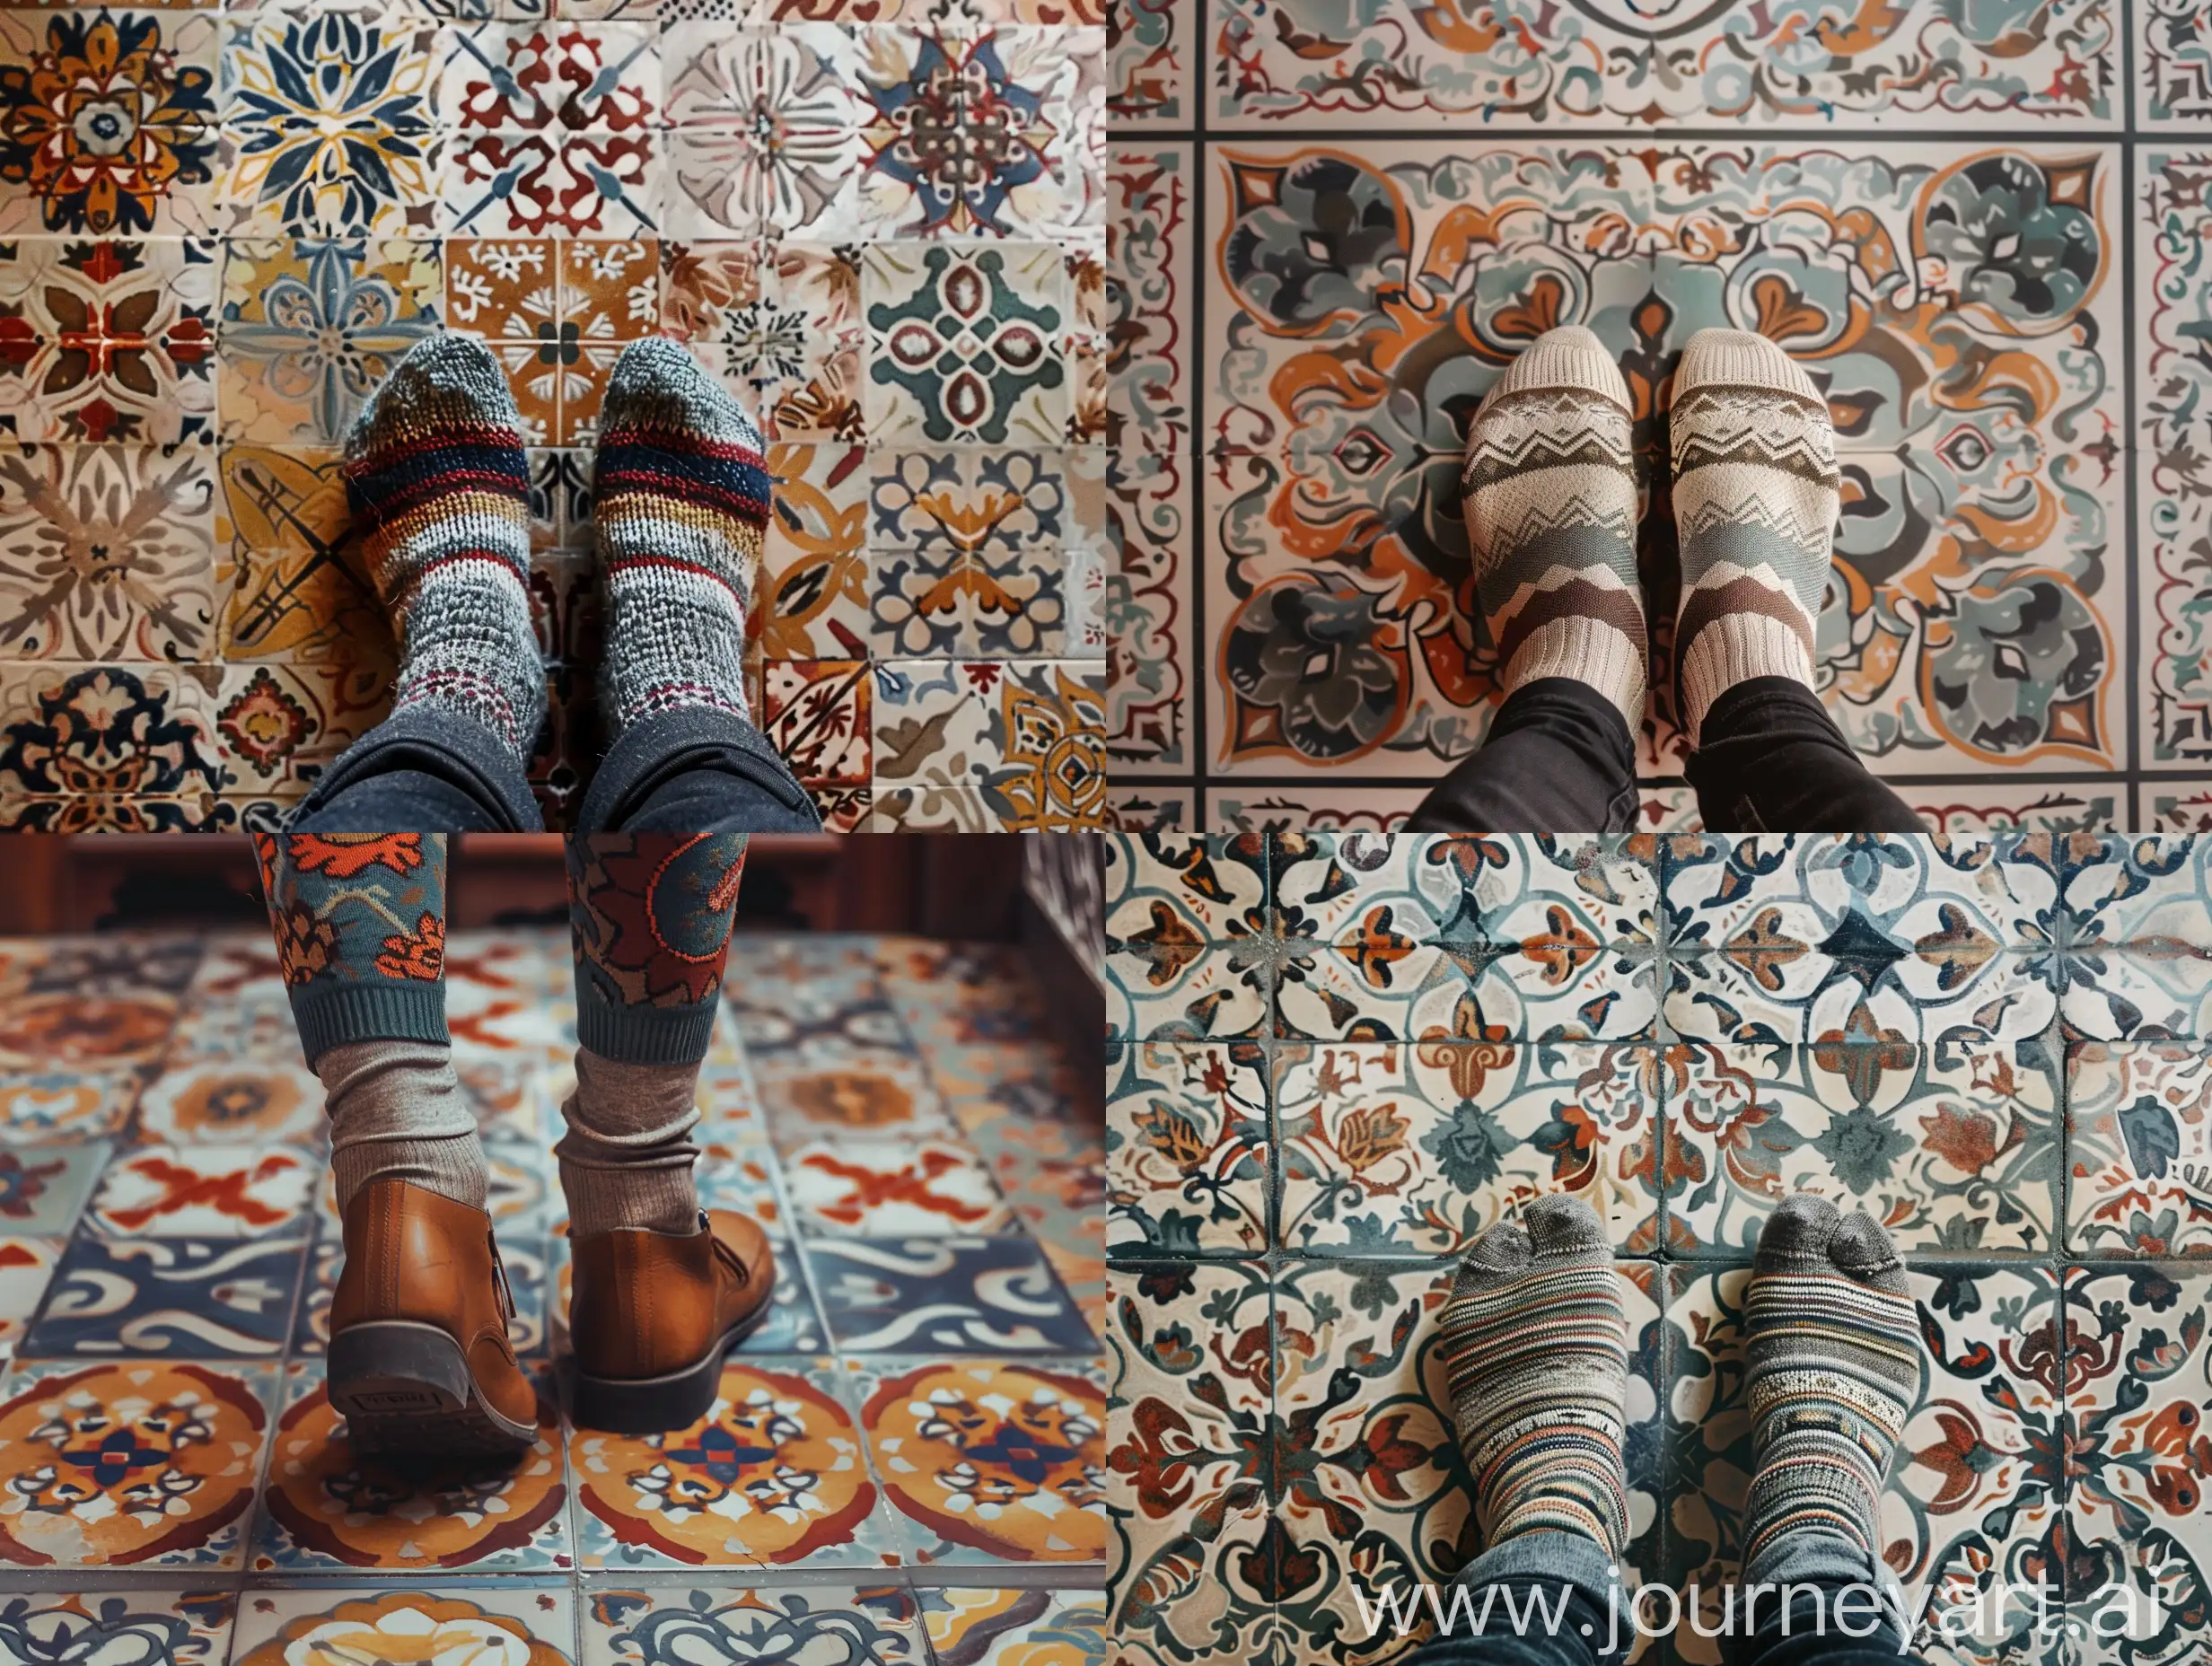 Feet-Walking-on-Patterned-Floor-in-Socks